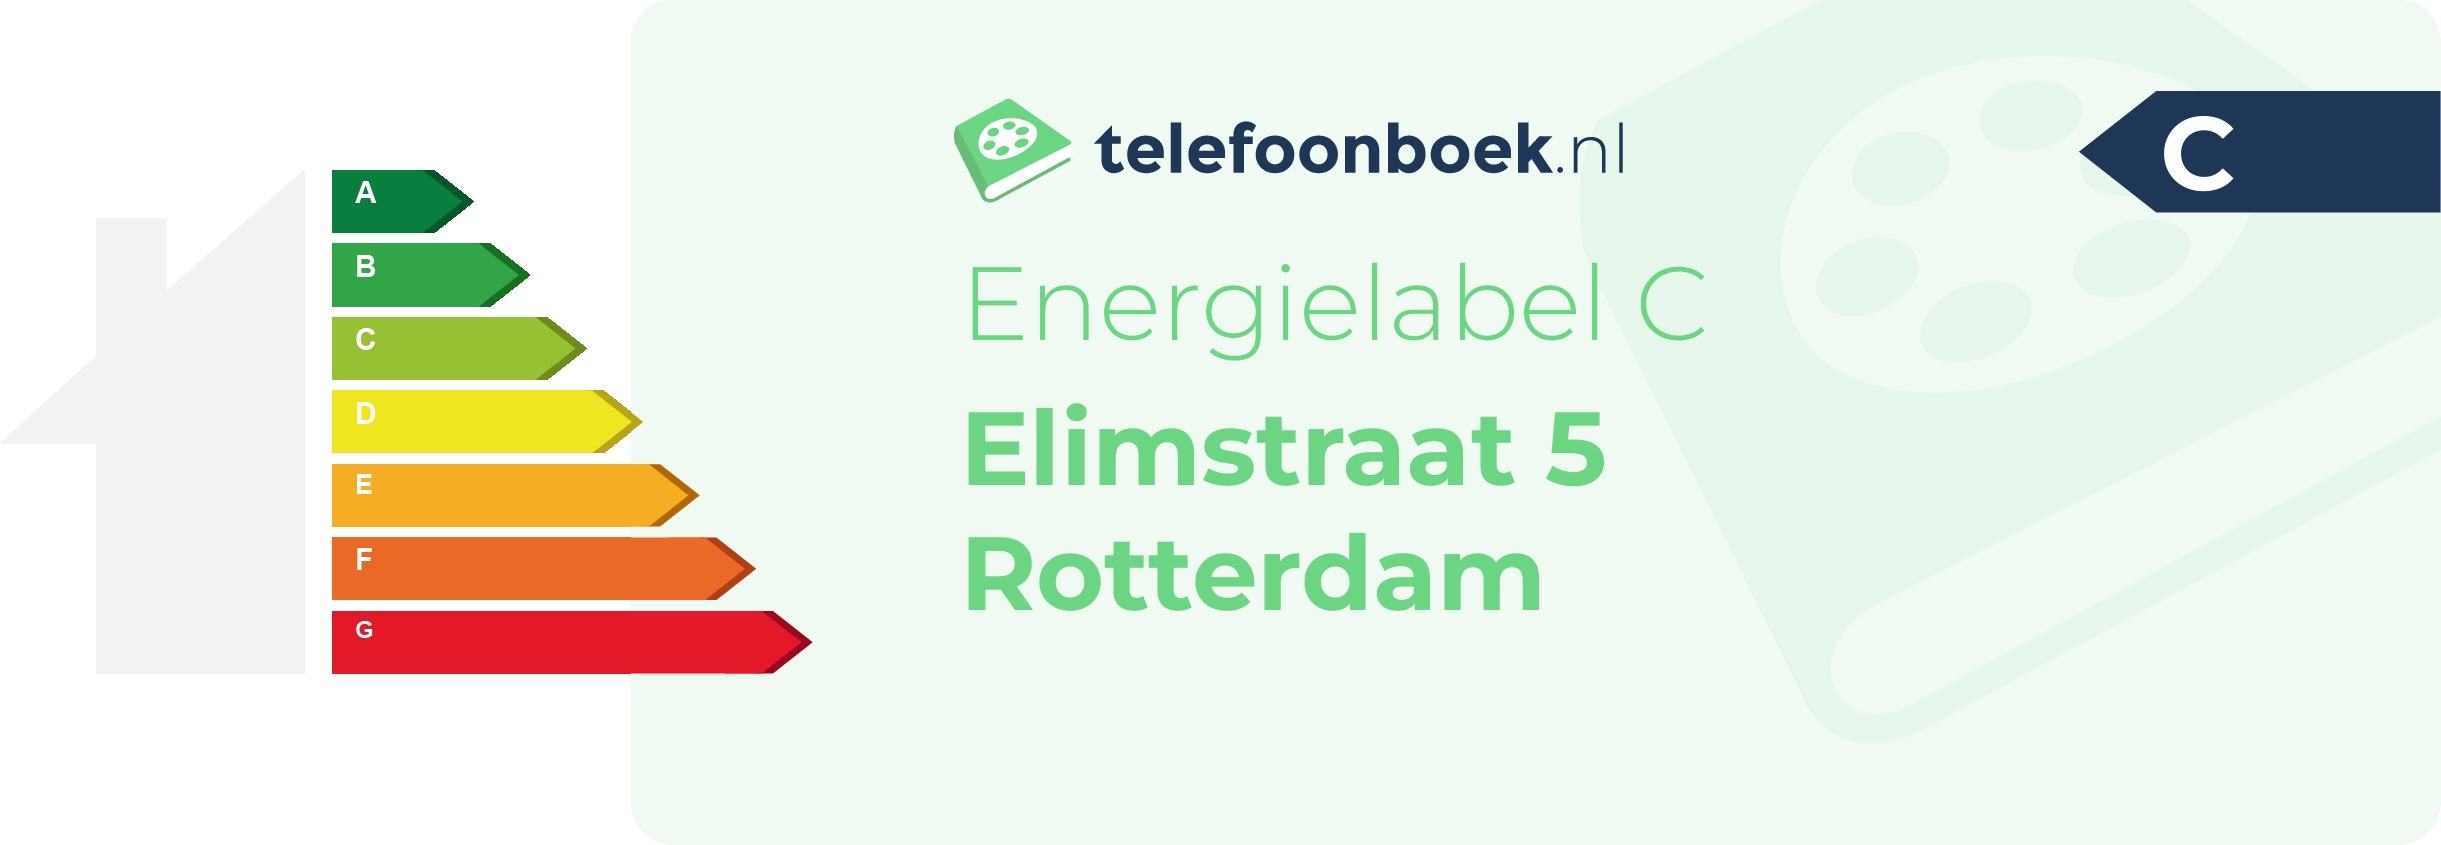 Energielabel Elimstraat 5 Rotterdam